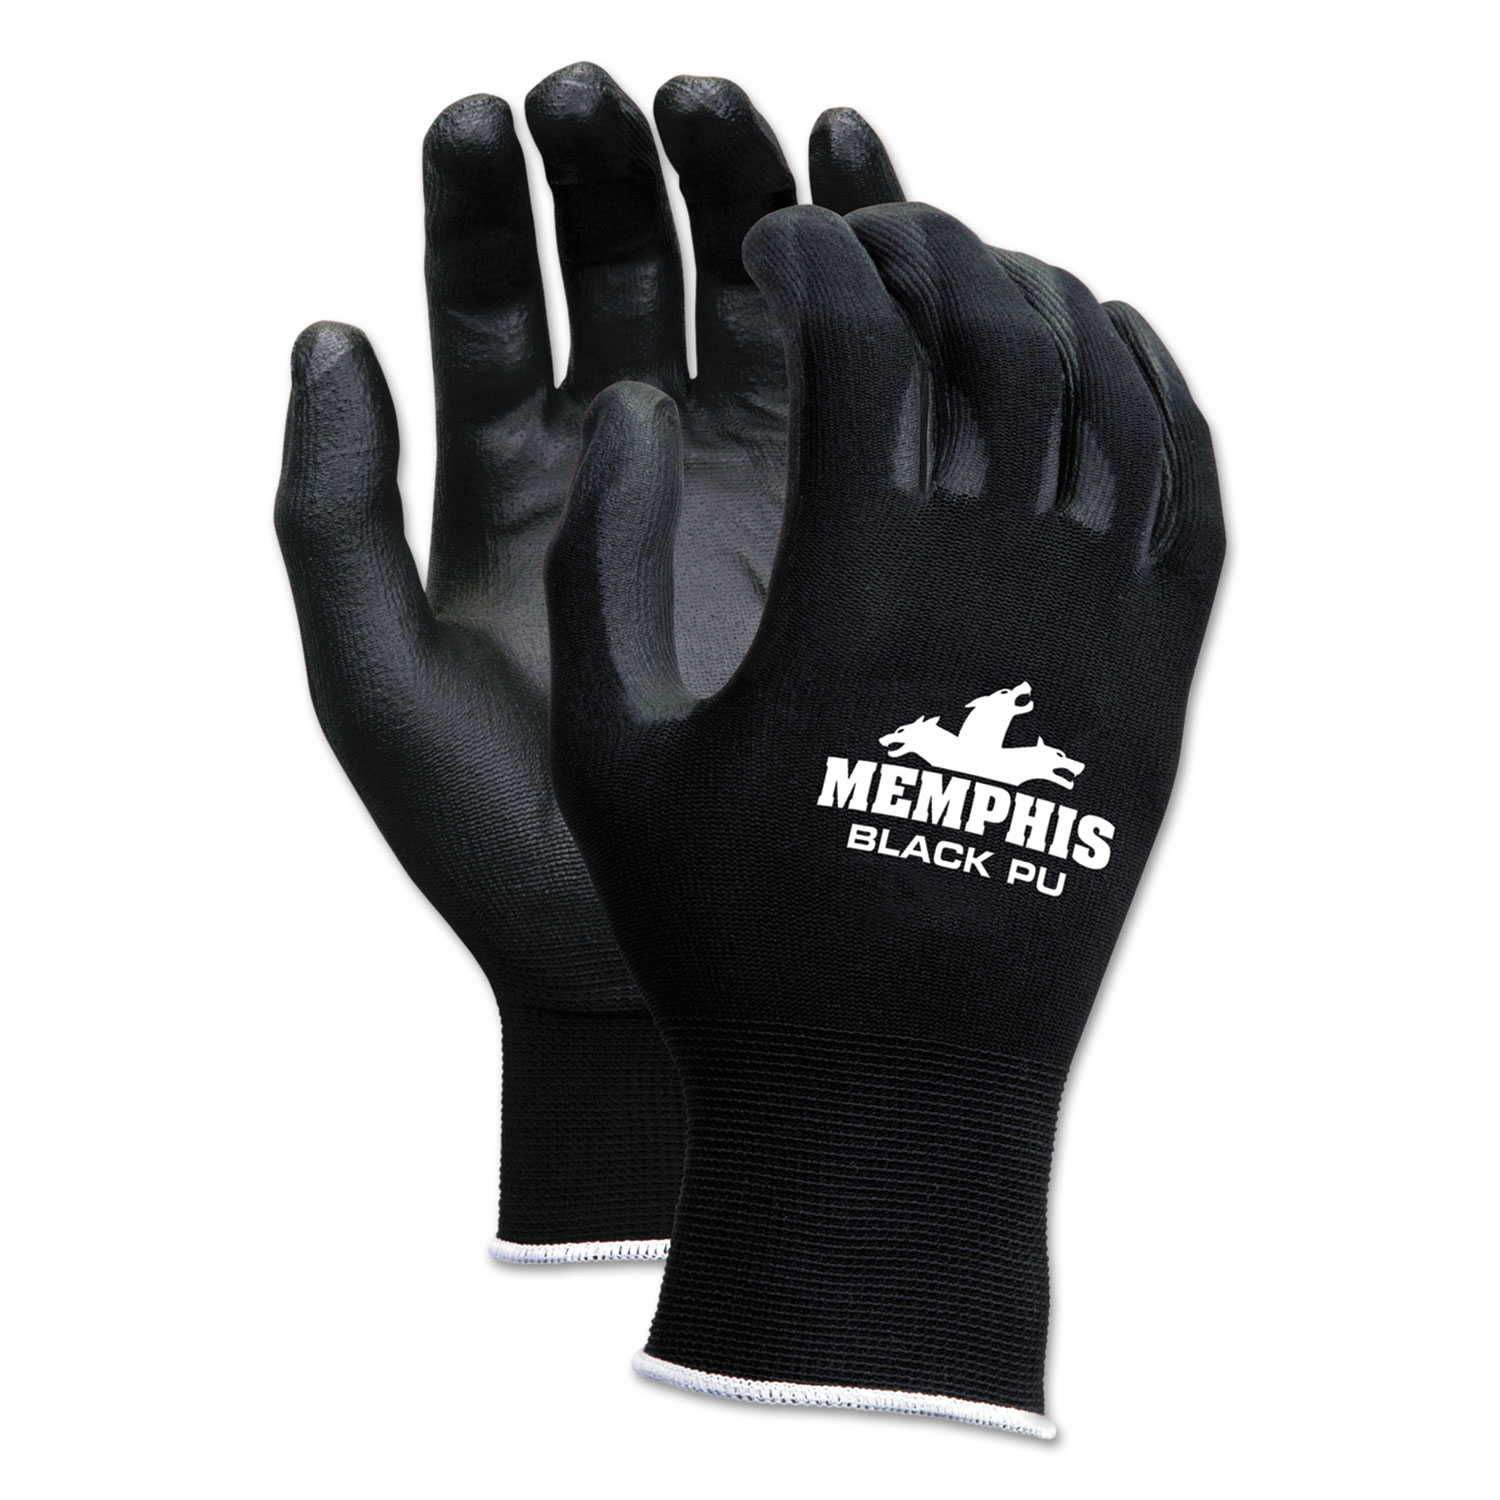 Economy PU Coated Work Gloves, Black, X-Large, 1 Dozen